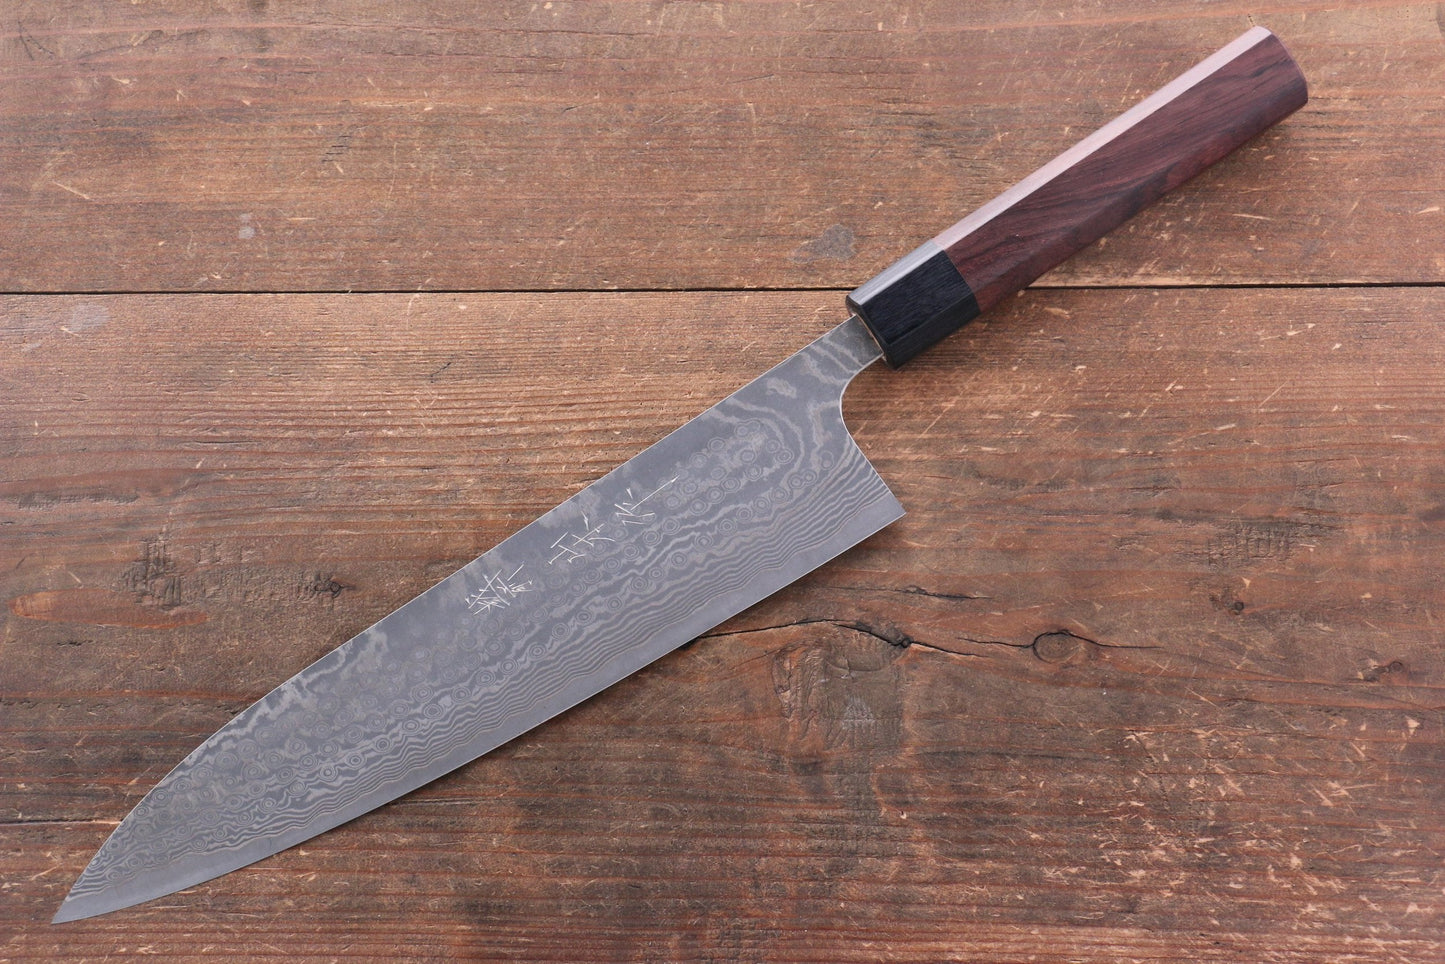 Marke Nao Yamamoto SPG 2 Mehrzweckmesser aus schwarzem Damaststahl, japanisches Gyuto-Messer, 240 mm Griff aus Sandelholz